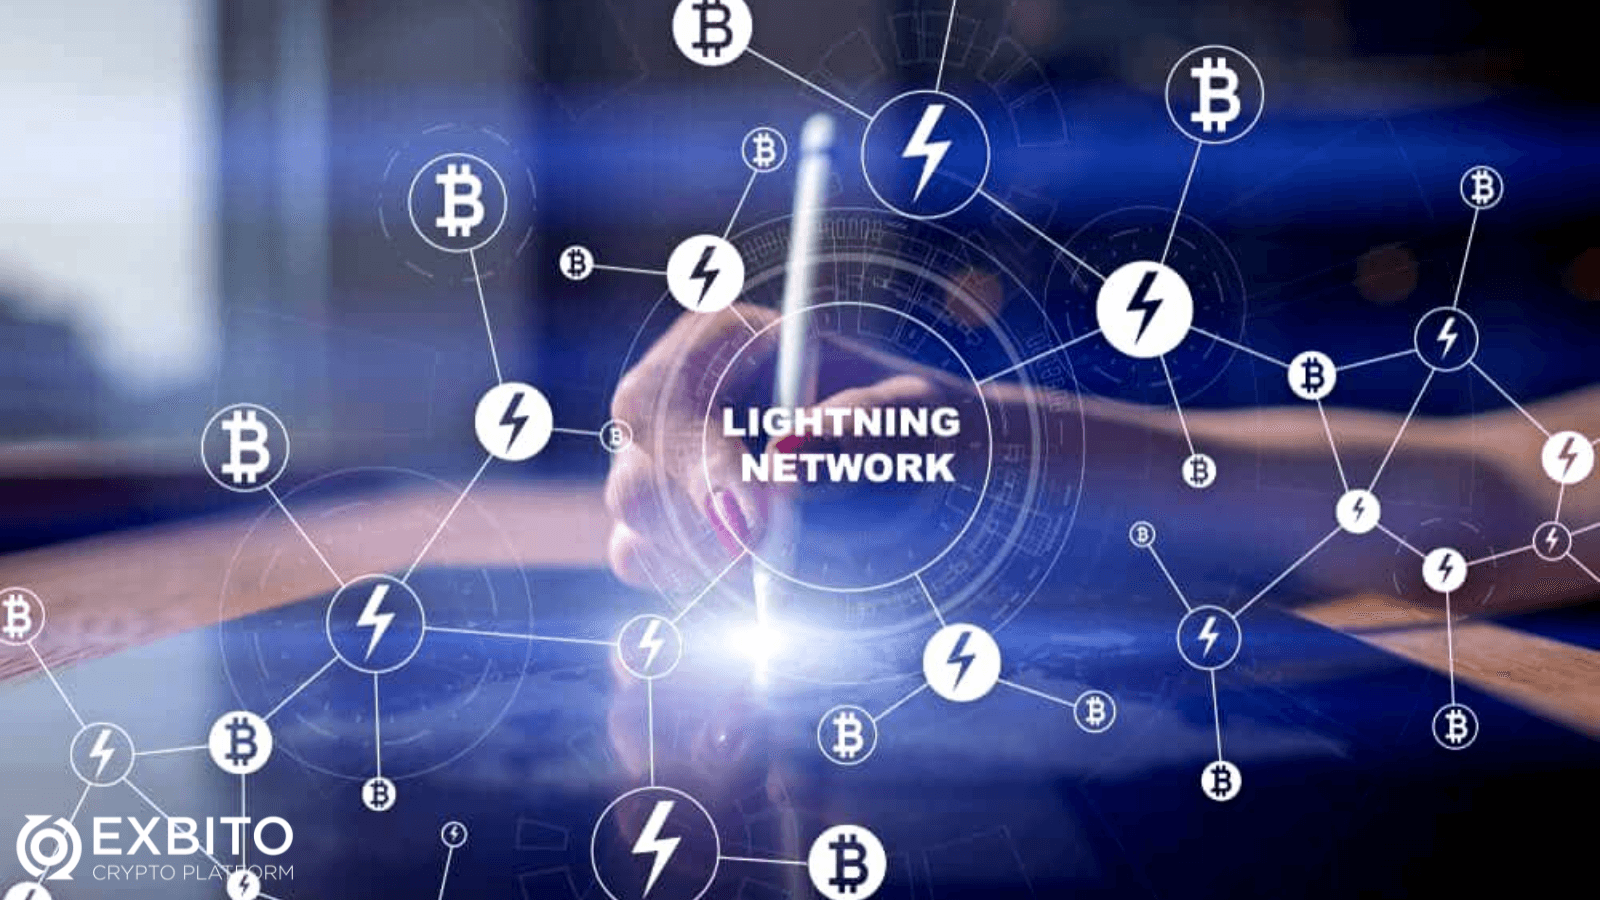 شبکه لایتنینگ (Lightning Network) چیست؟